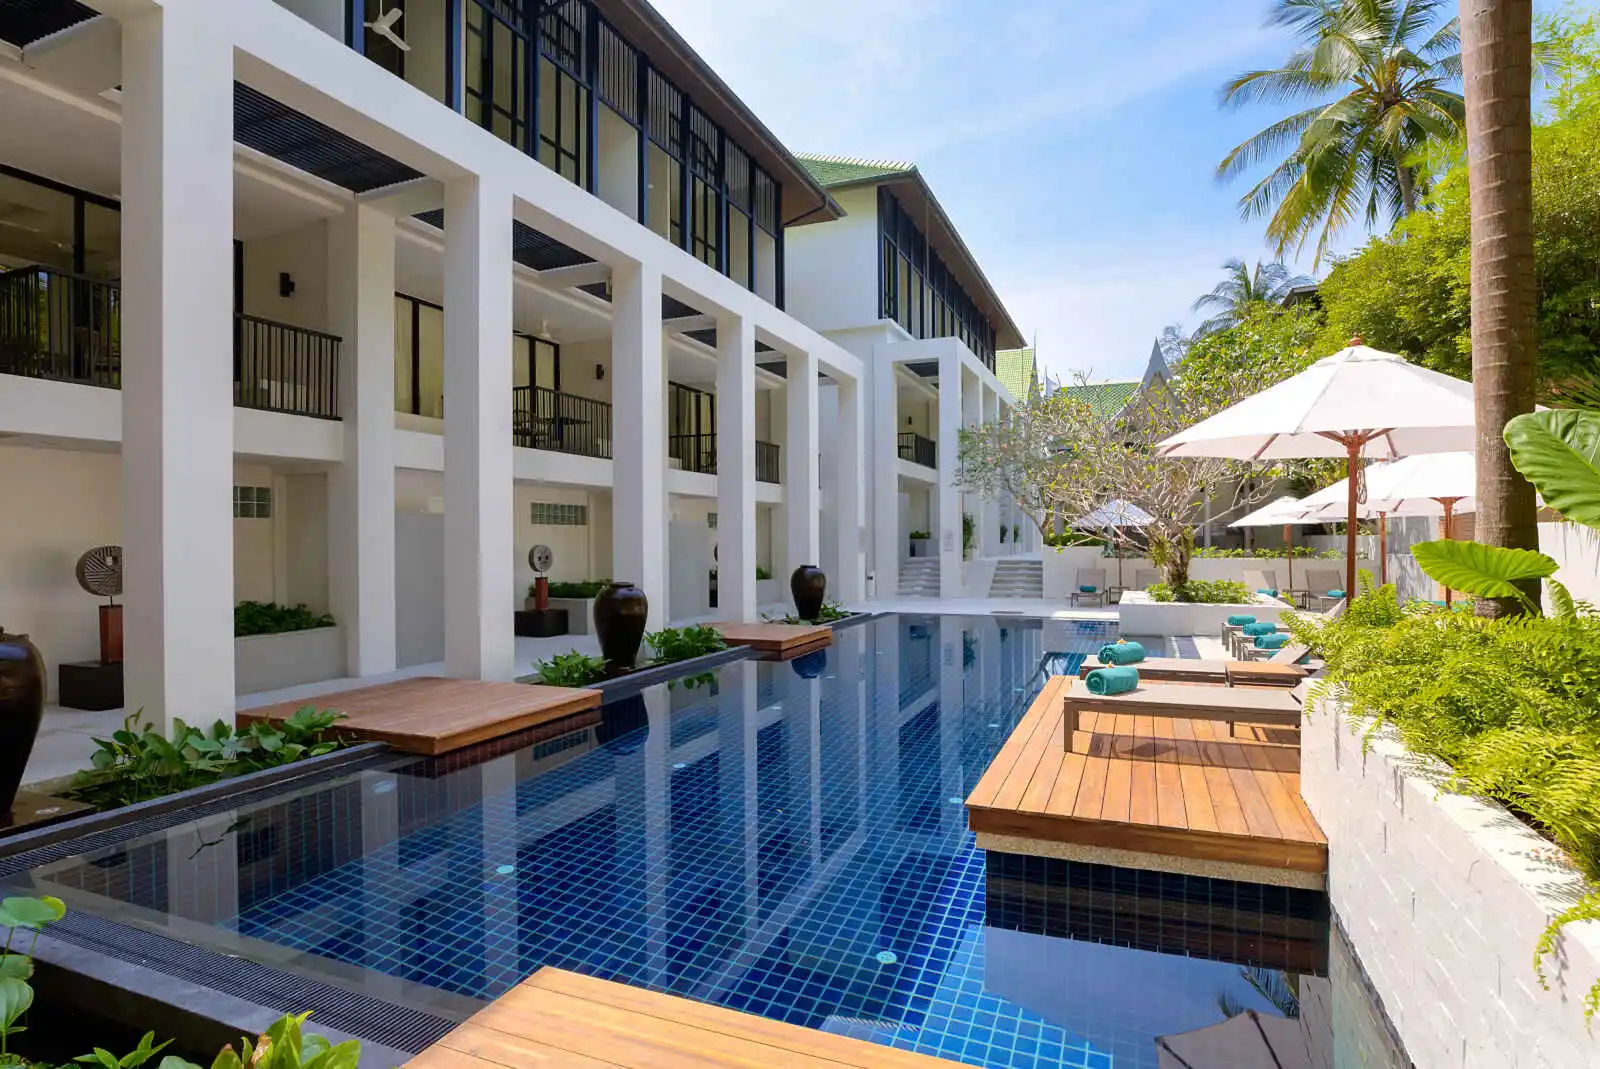 Thaïlande - Phuket - Hotel Outrigger Surin Beach Resort 4*